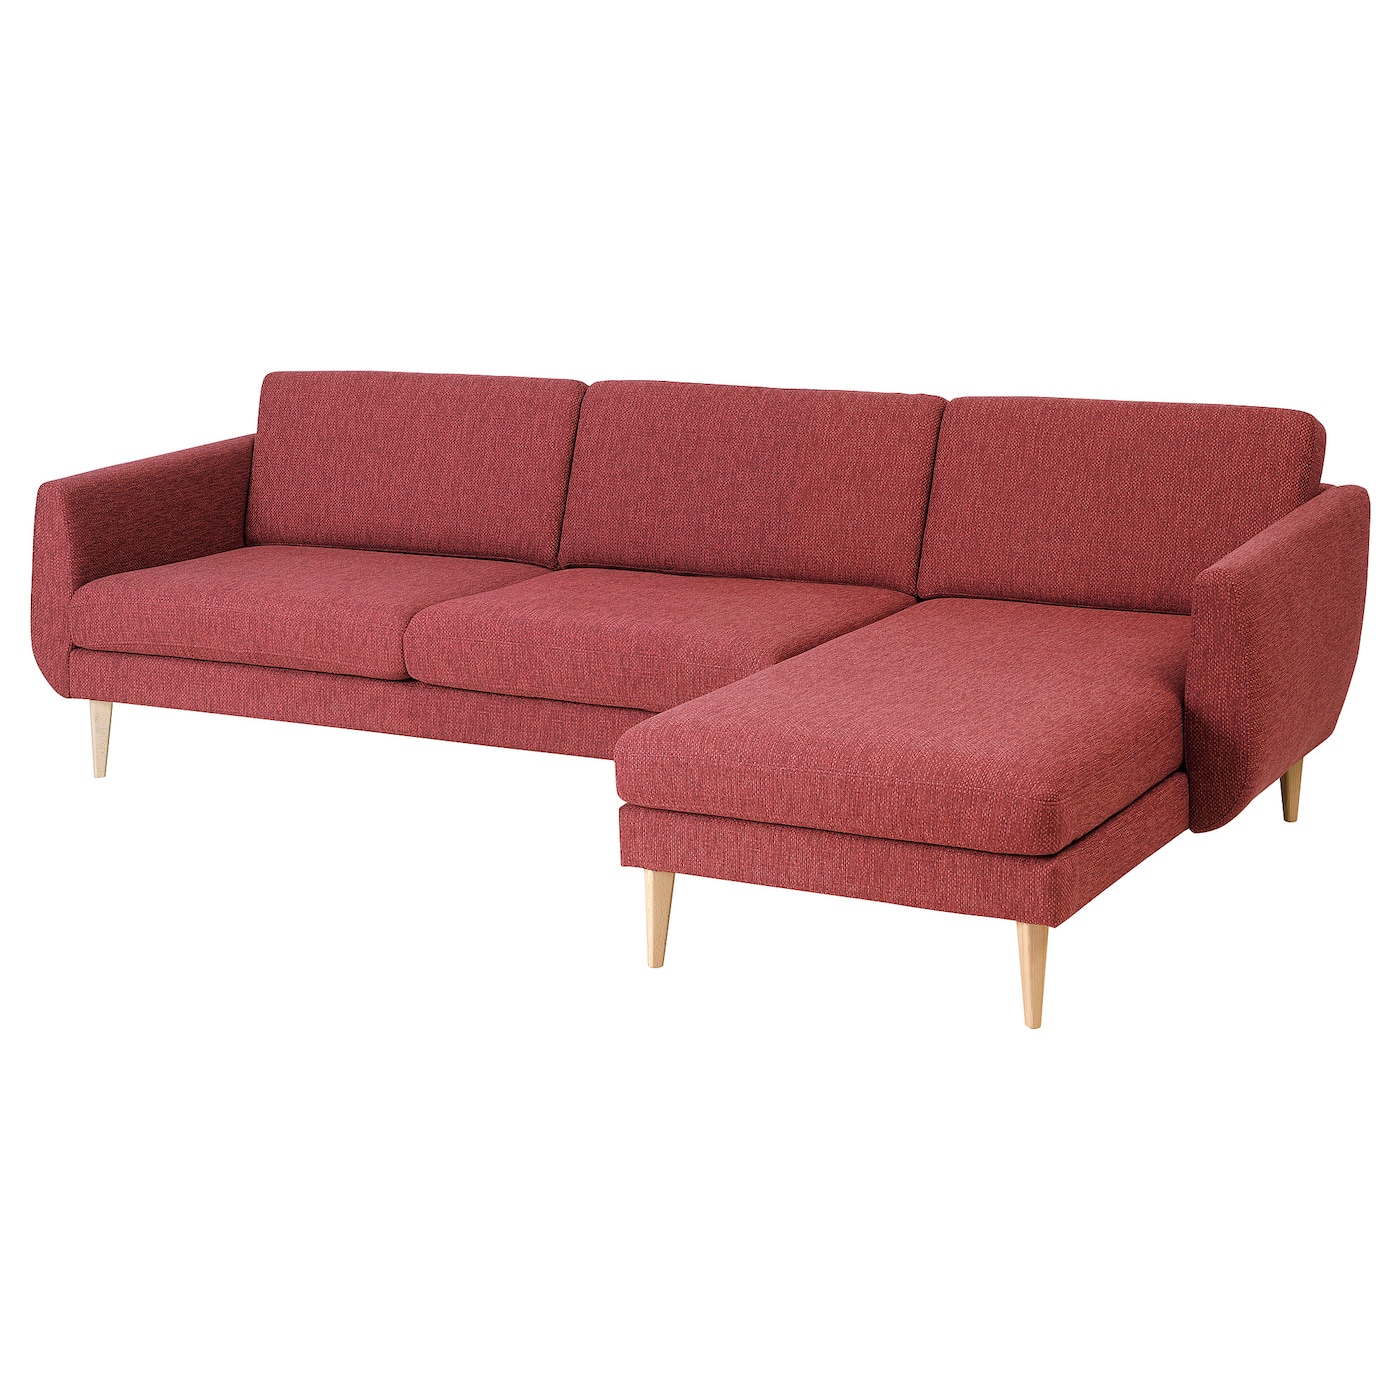 СМЕДСТОРП 4-местный диван + диван, Лейде/красный/коричневый дуб SMEDSTORP IKEA